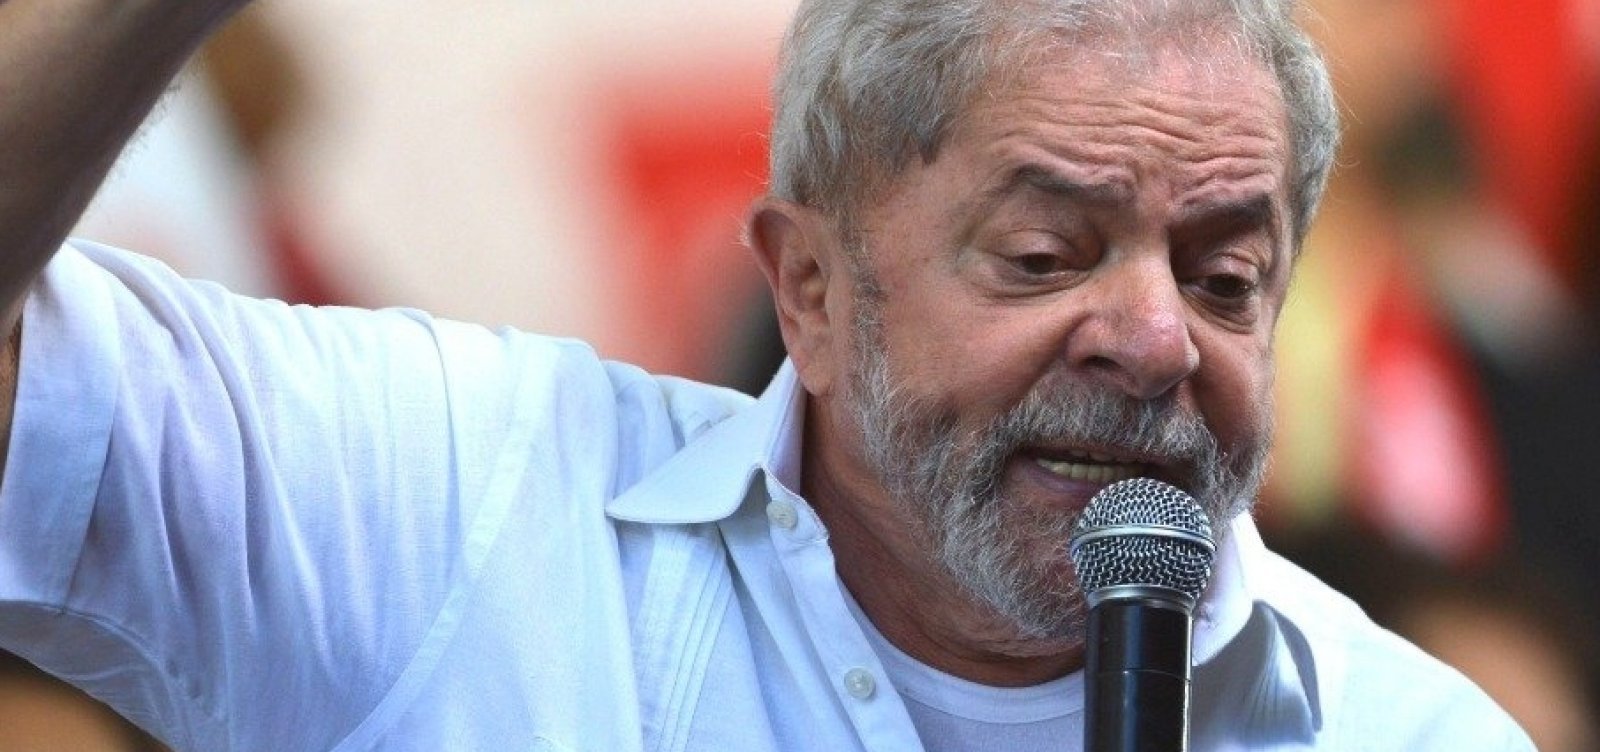 STJ julgará recurso de Lula do caso Triplex nos próximos dias